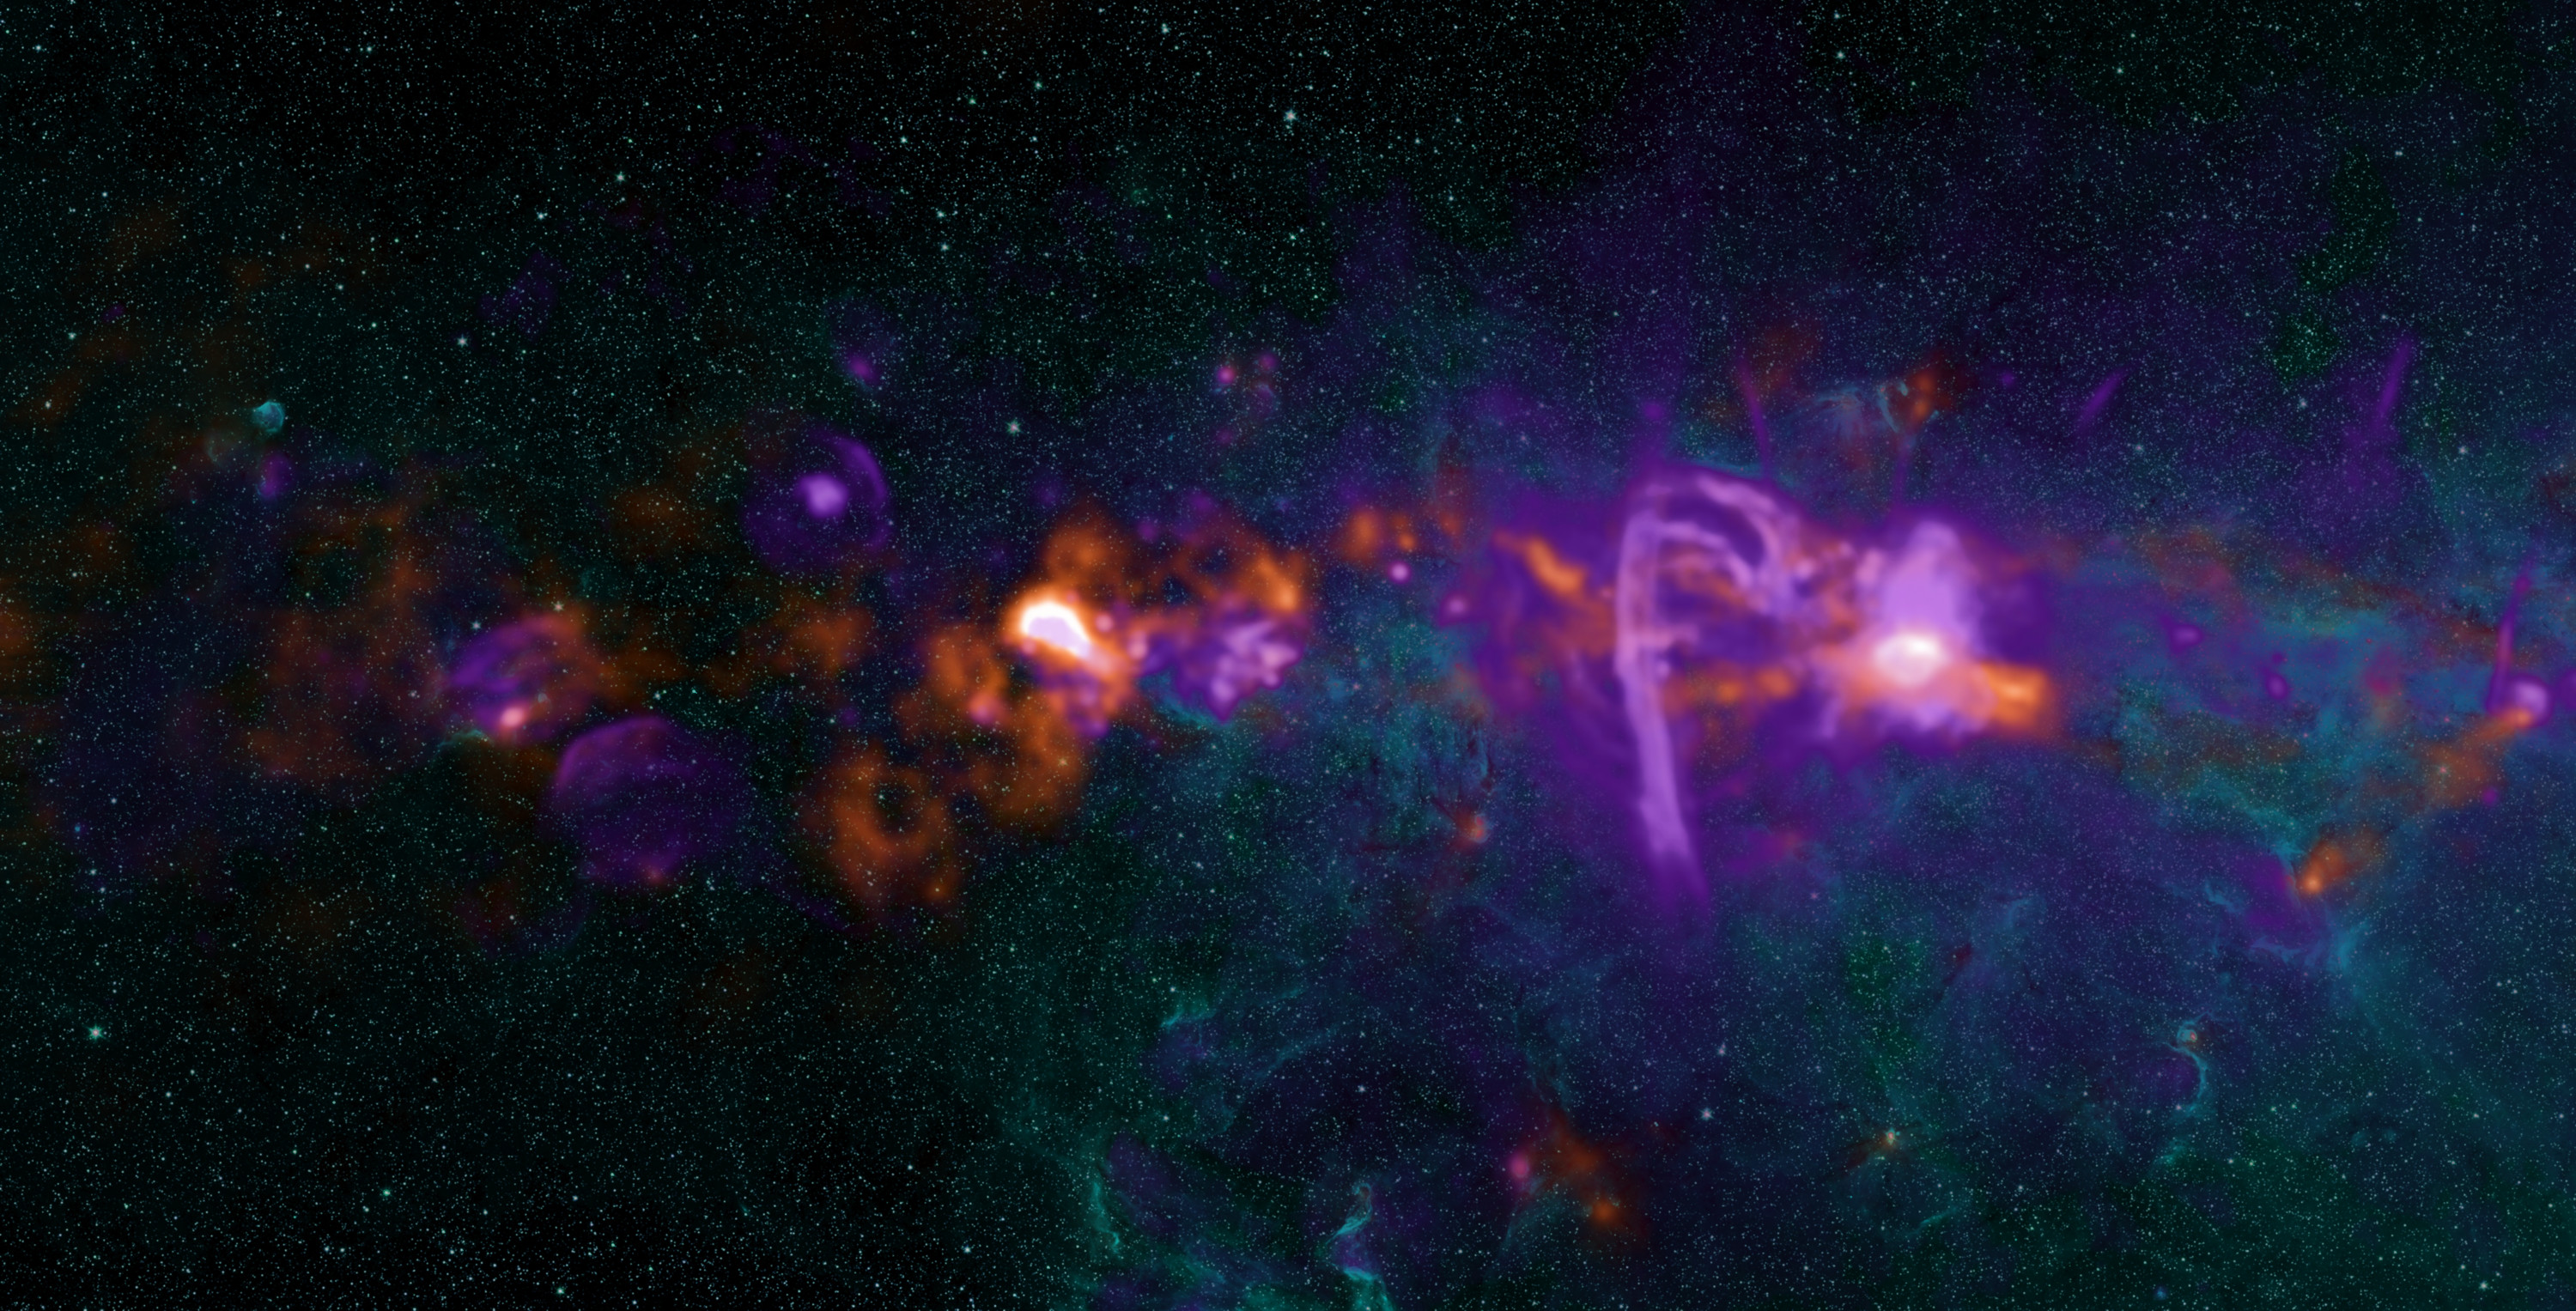 電波で見た天の川銀河の中心付近の様子。右寄りの明るい天体が、超巨大ブラックホールに対応する「いて座A*」です。
The view of the centre of our galaxy with a closer view of the object known as Sagittarius A*, the bright radio source that corresponds to the supermassive black hole.
Credit: NRAO/AUI/NSF